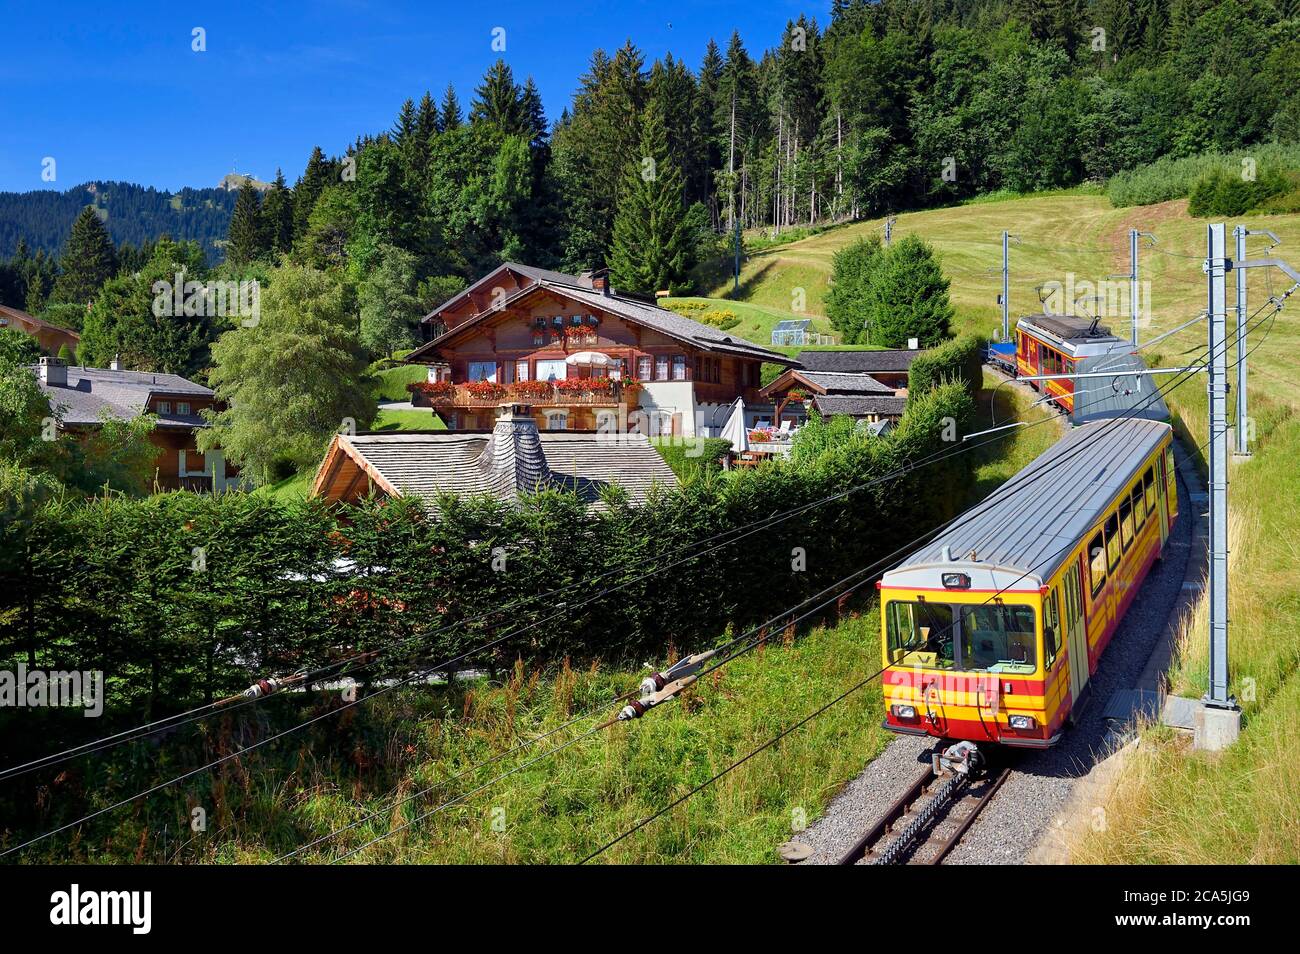 Switzerland, Canton of Vaud, Villars-sur-Ollon, train to the Bretaye pass station Stock Photo